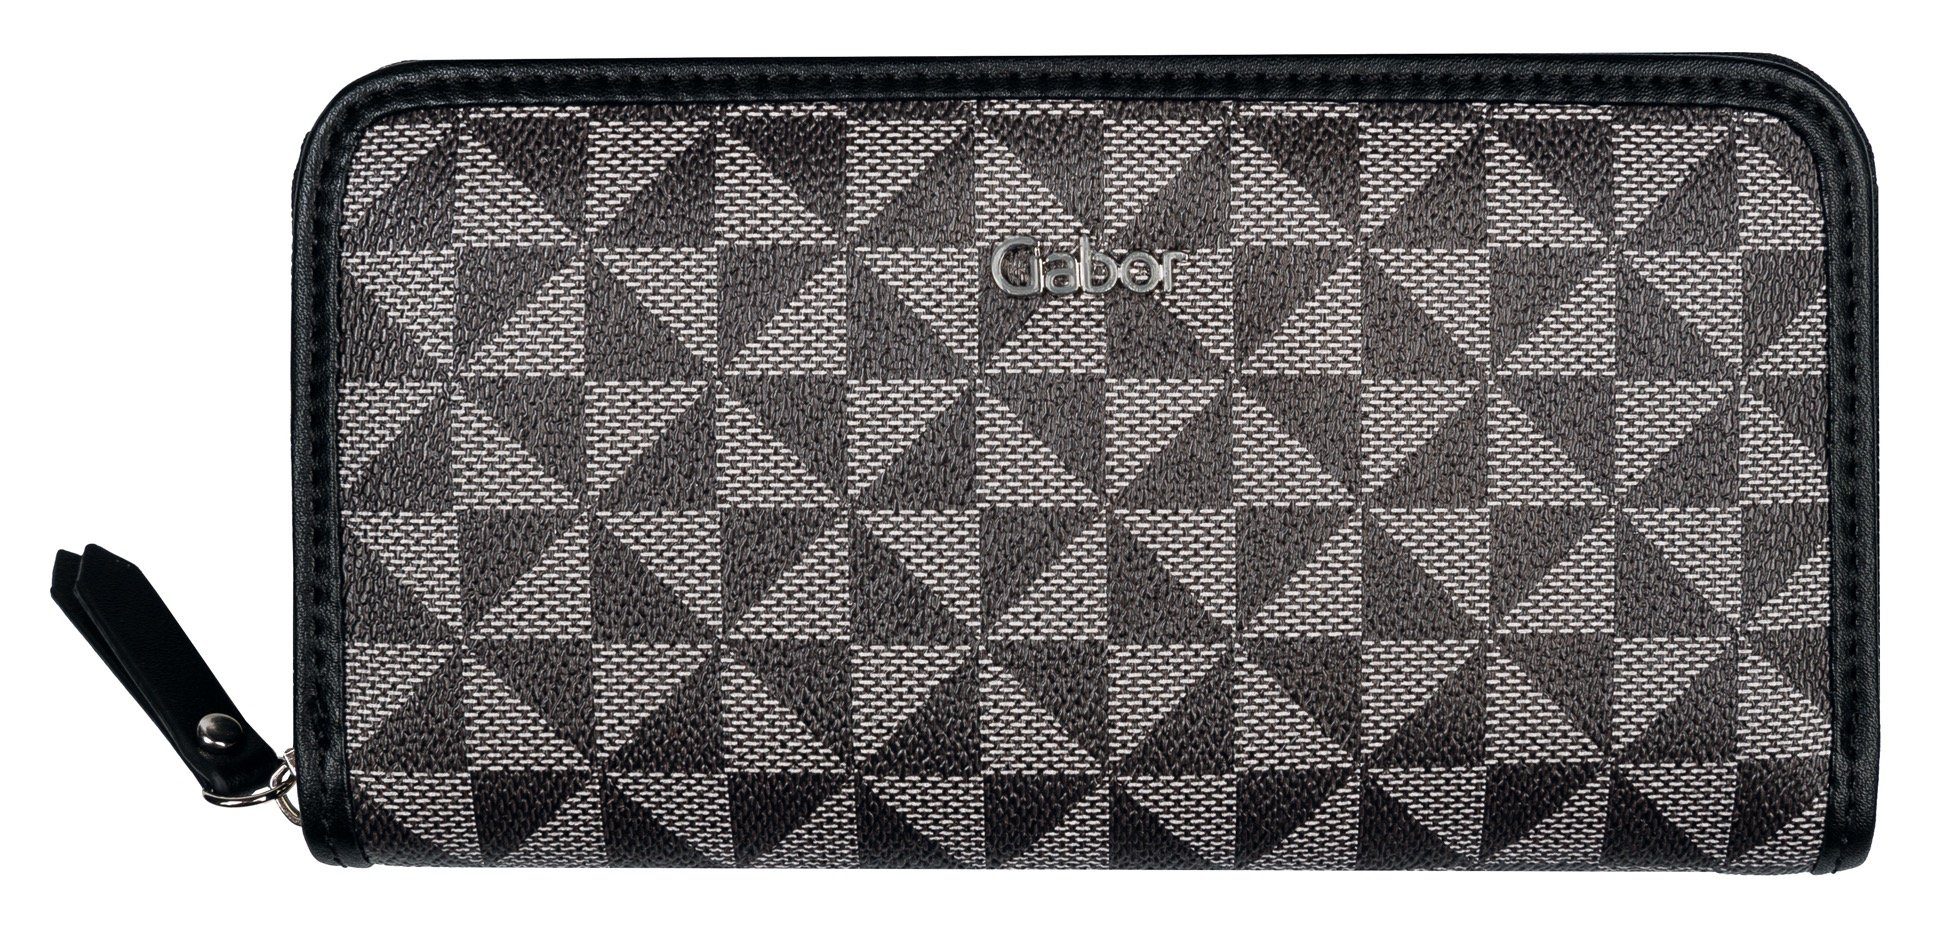 Gabor Geldbörse BARINA Long zip wallet XL, Hauptfach mit Reißverschluss schwarz